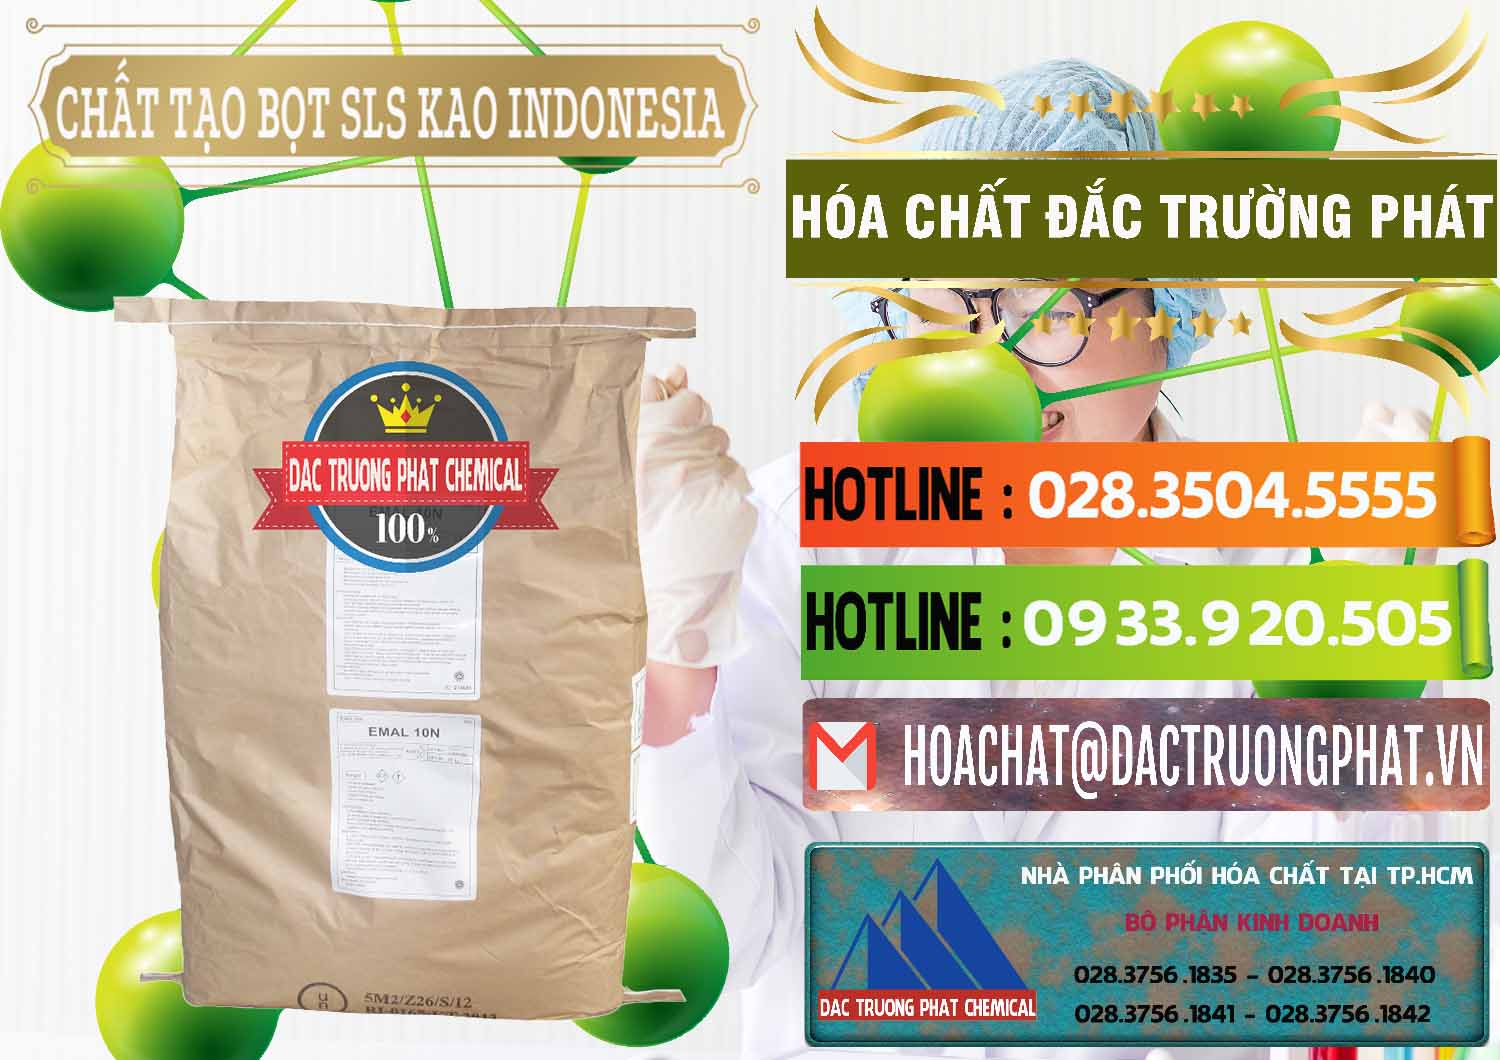 Công ty kinh doanh và bán Chất Tạo Bọt SLS - Sodium Lauryl Sulfate EMAL 10N KAO Indonesia - 0047 - Công ty phân phối ( nhập khẩu ) hóa chất tại TP.HCM - cungcaphoachat.com.vn